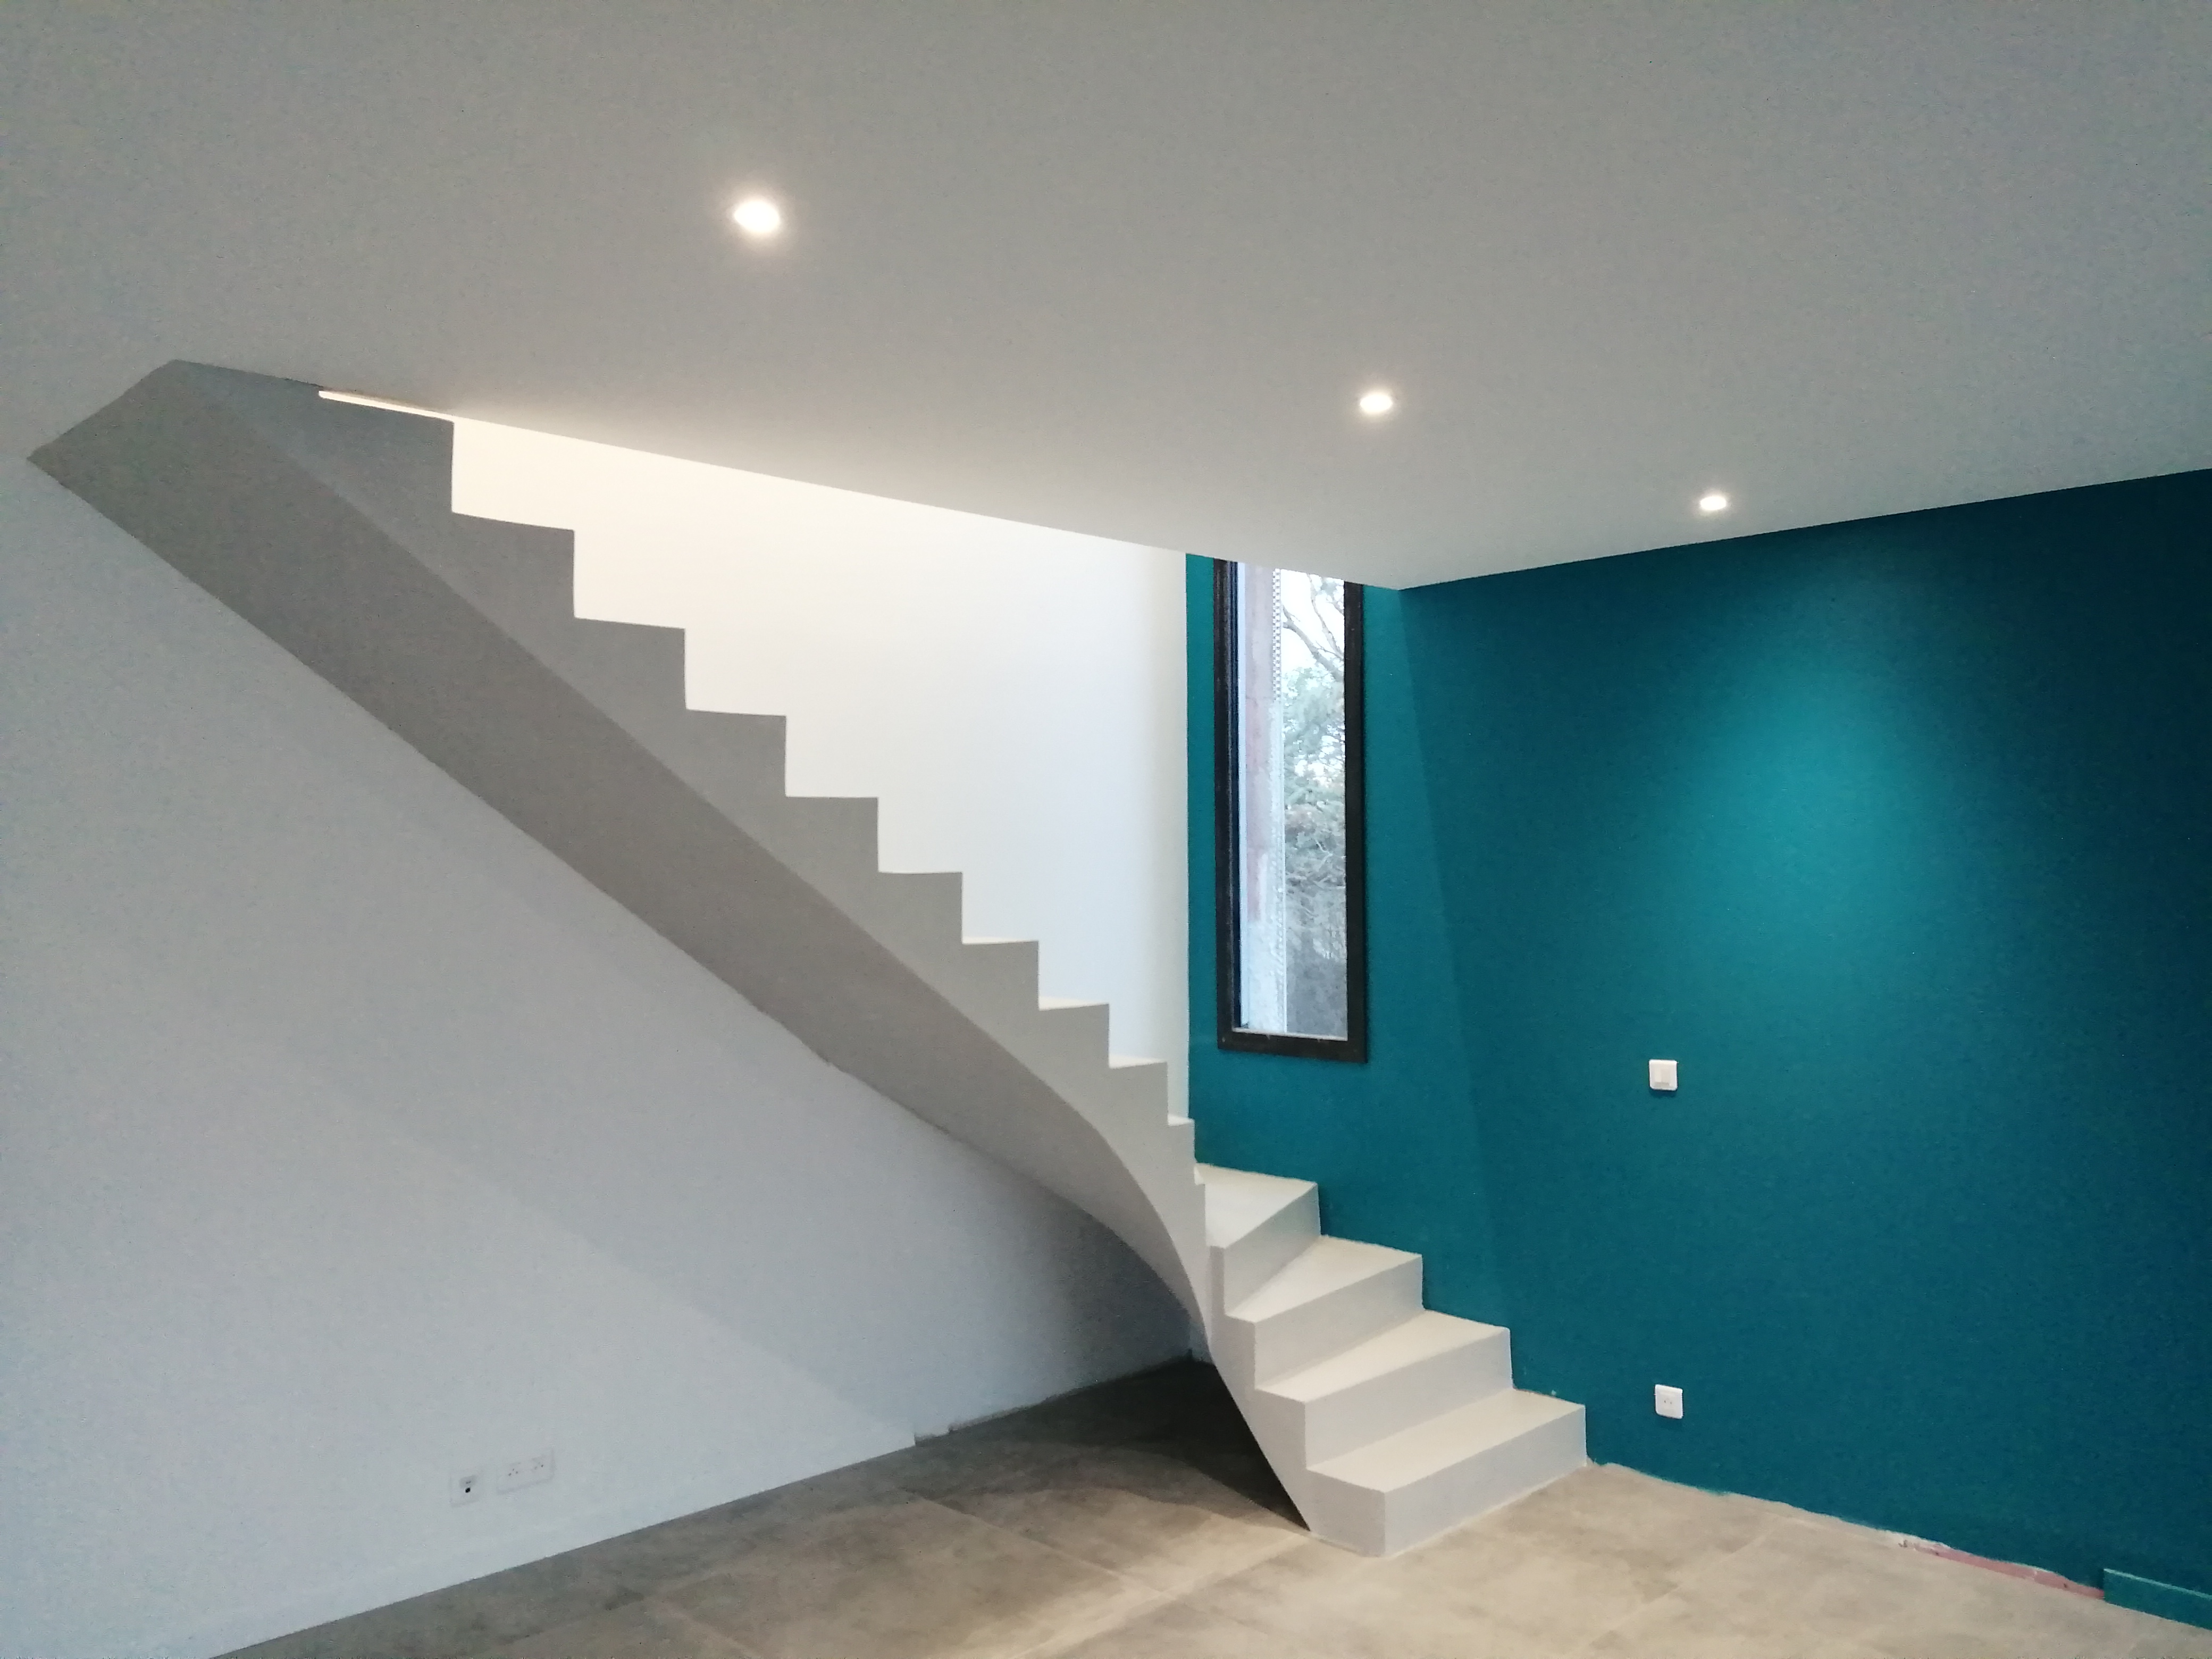 Escalier en béton ciré dans un salon sur fond d'un mur en bleu turquoise.